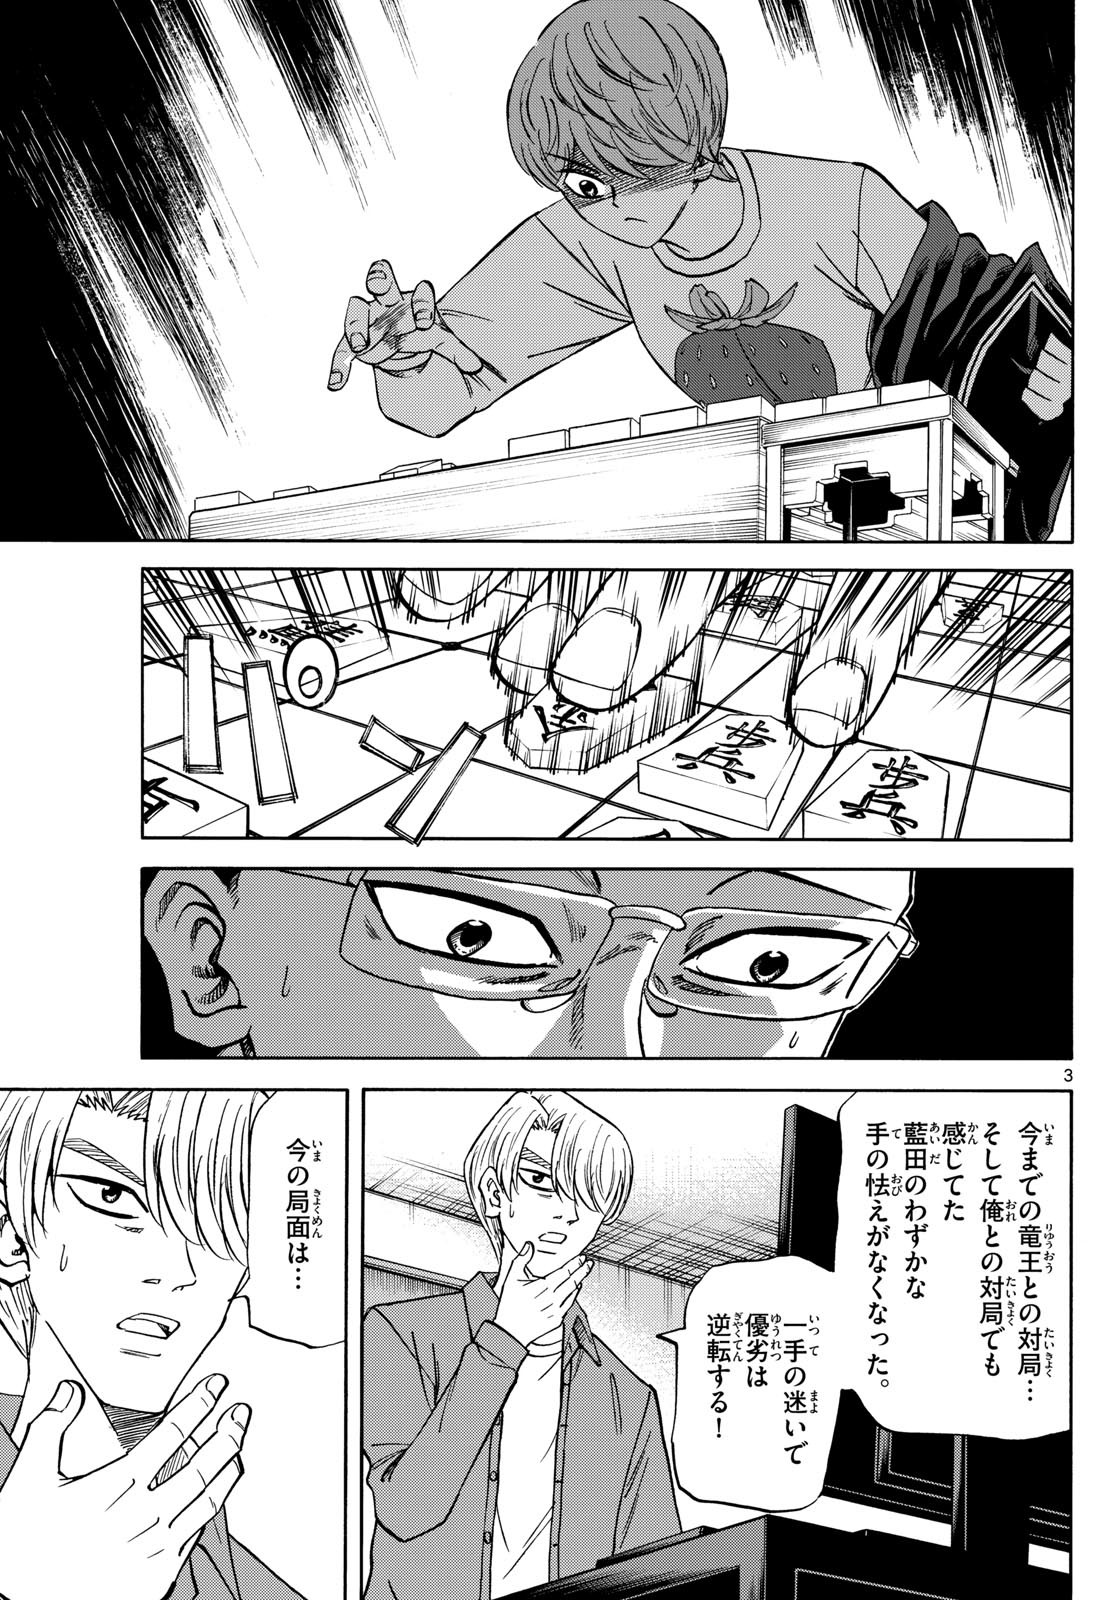 Ryu-to-Ichigo - Chapter 164 - Page 3